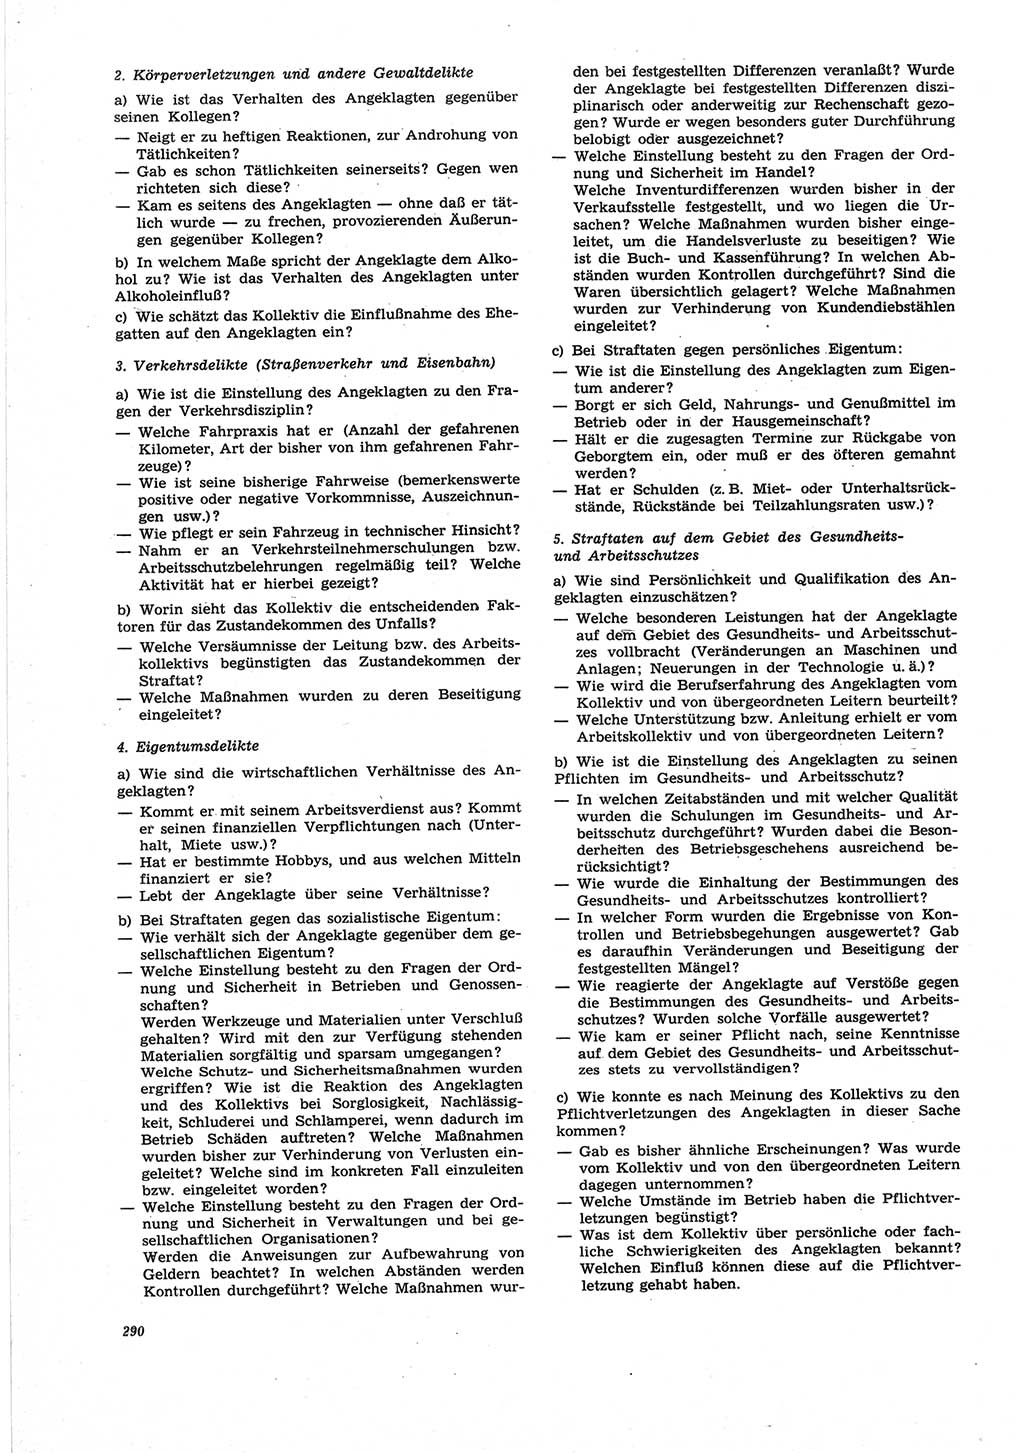 Neue Justiz (NJ), Zeitschrift für Recht und Rechtswissenschaft [Deutsche Demokratische Republik (DDR)], 25. Jahrgang 1971, Seite 290 (NJ DDR 1971, S. 290)